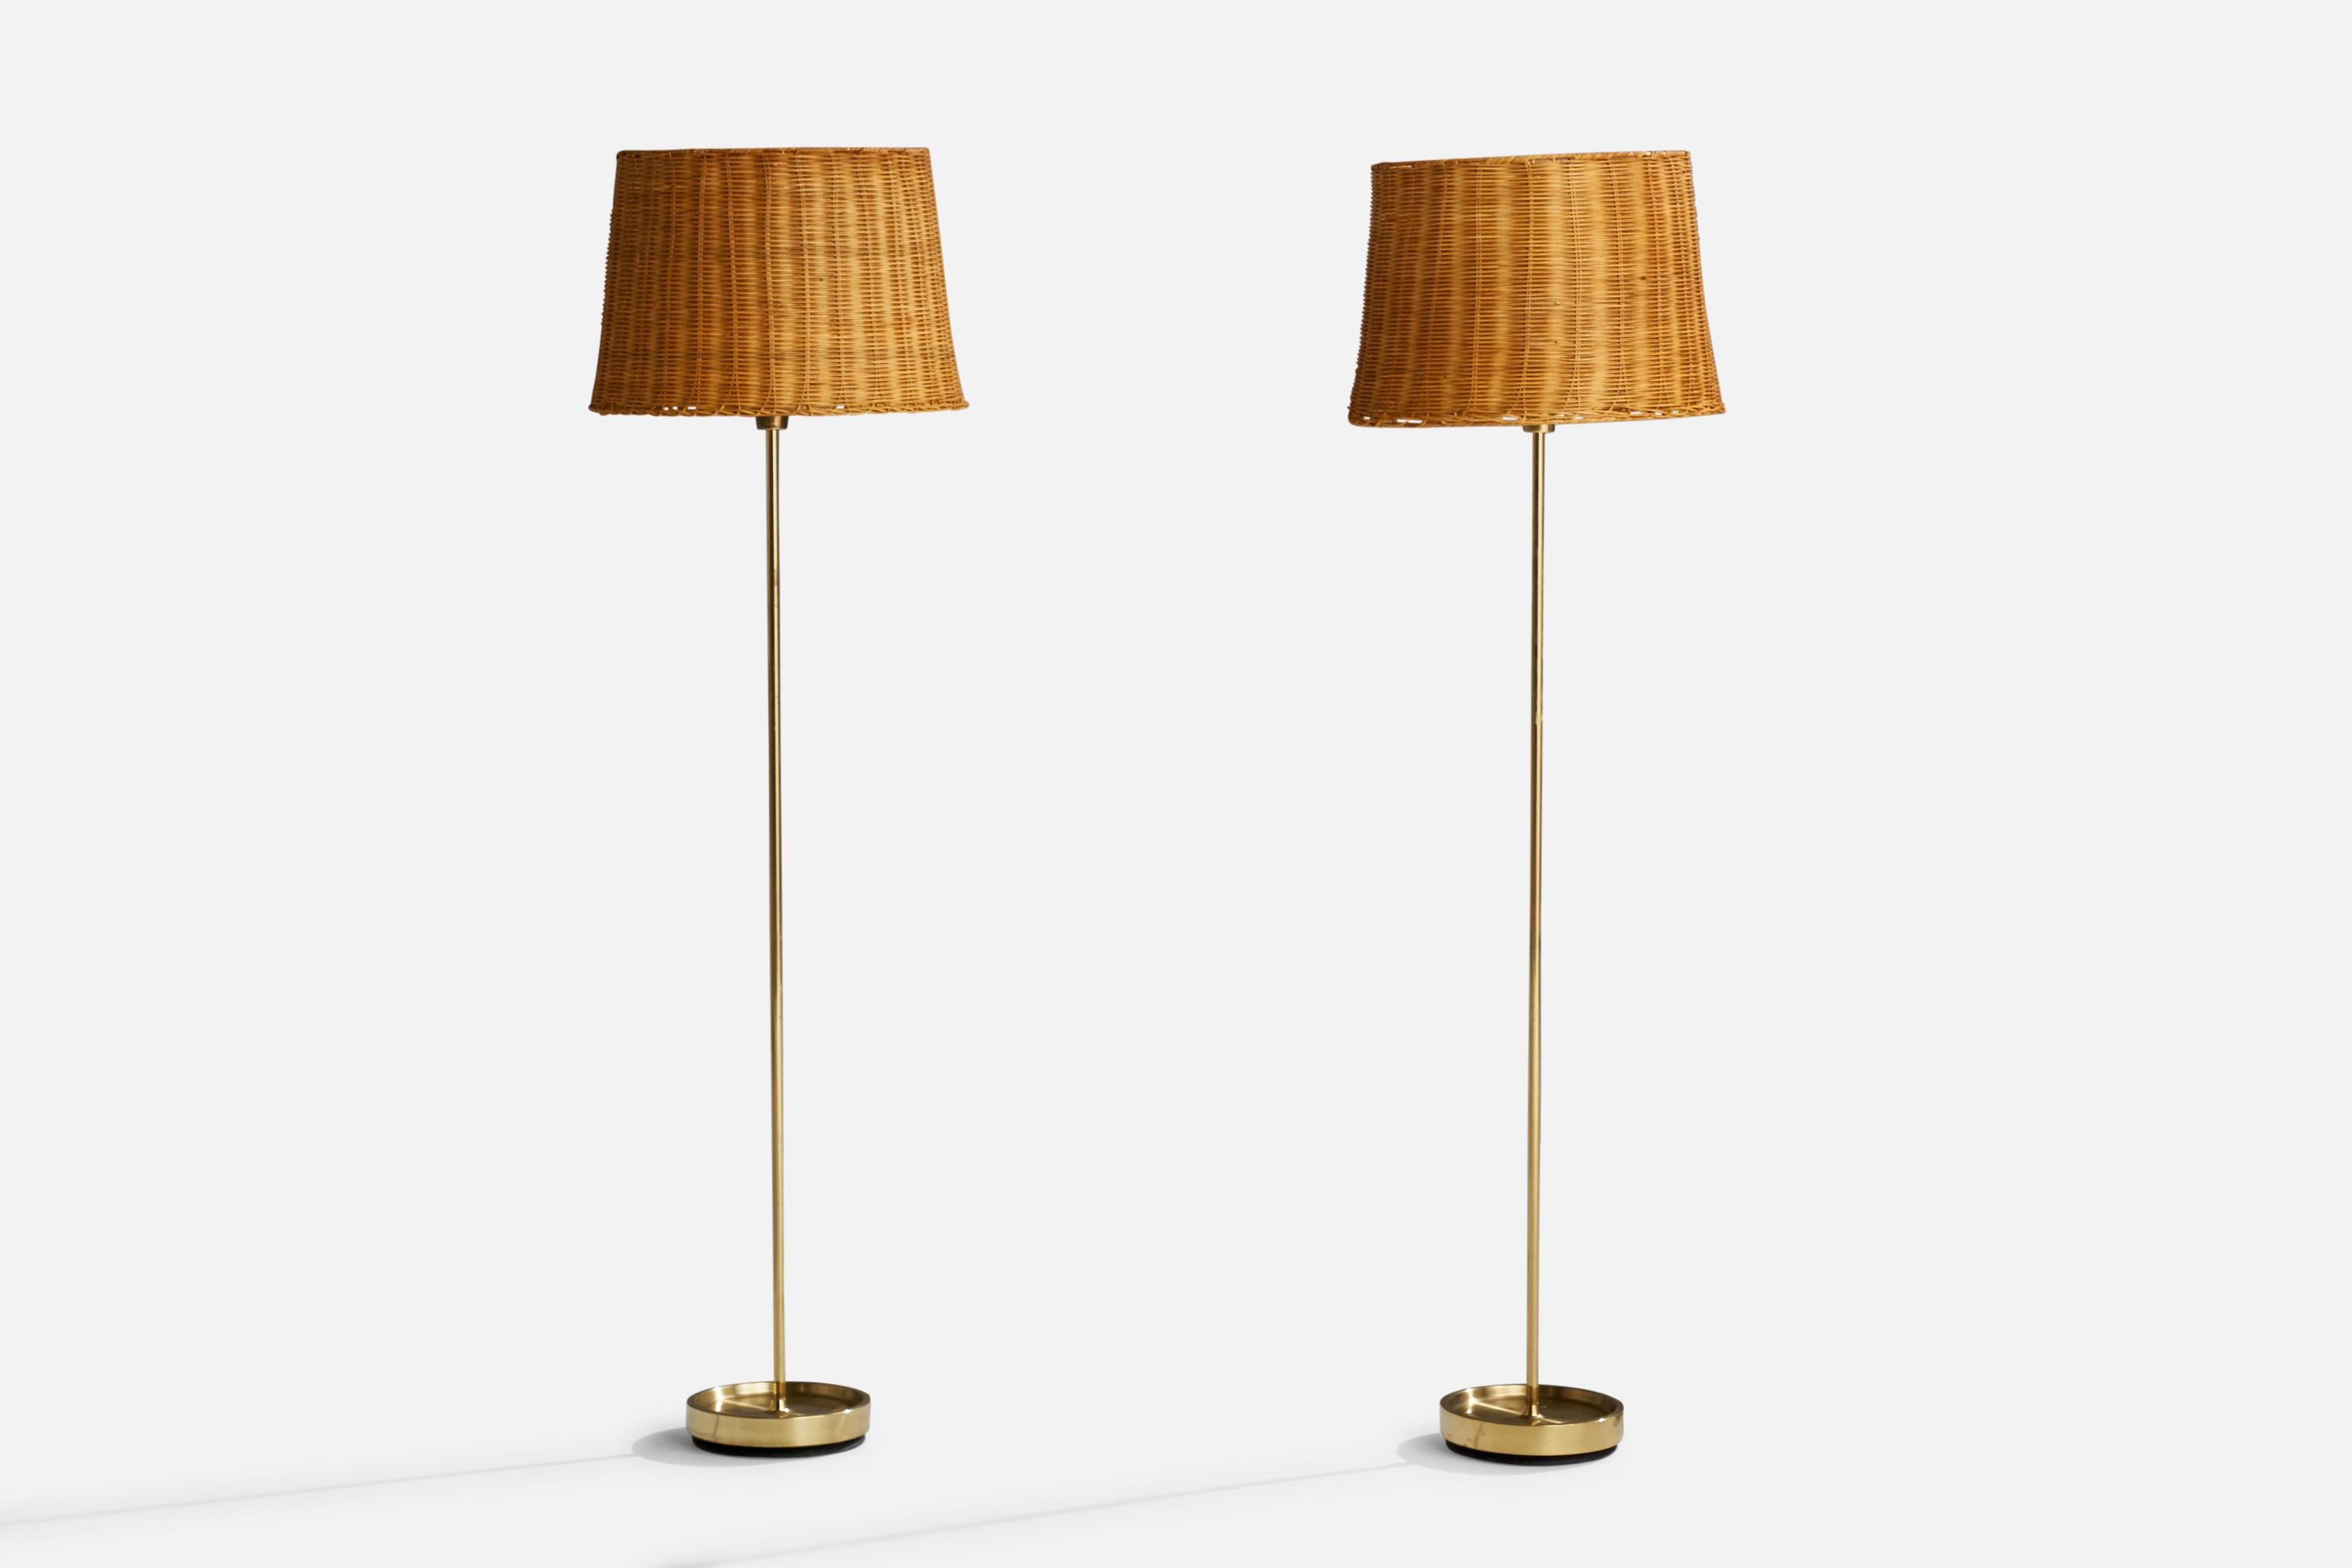 Paire de lampadaires en laiton et en rotin conçus et produits par Fagerhults Belysning, Suède, années 1960.

Dimensions totales (pouces) : 57.5